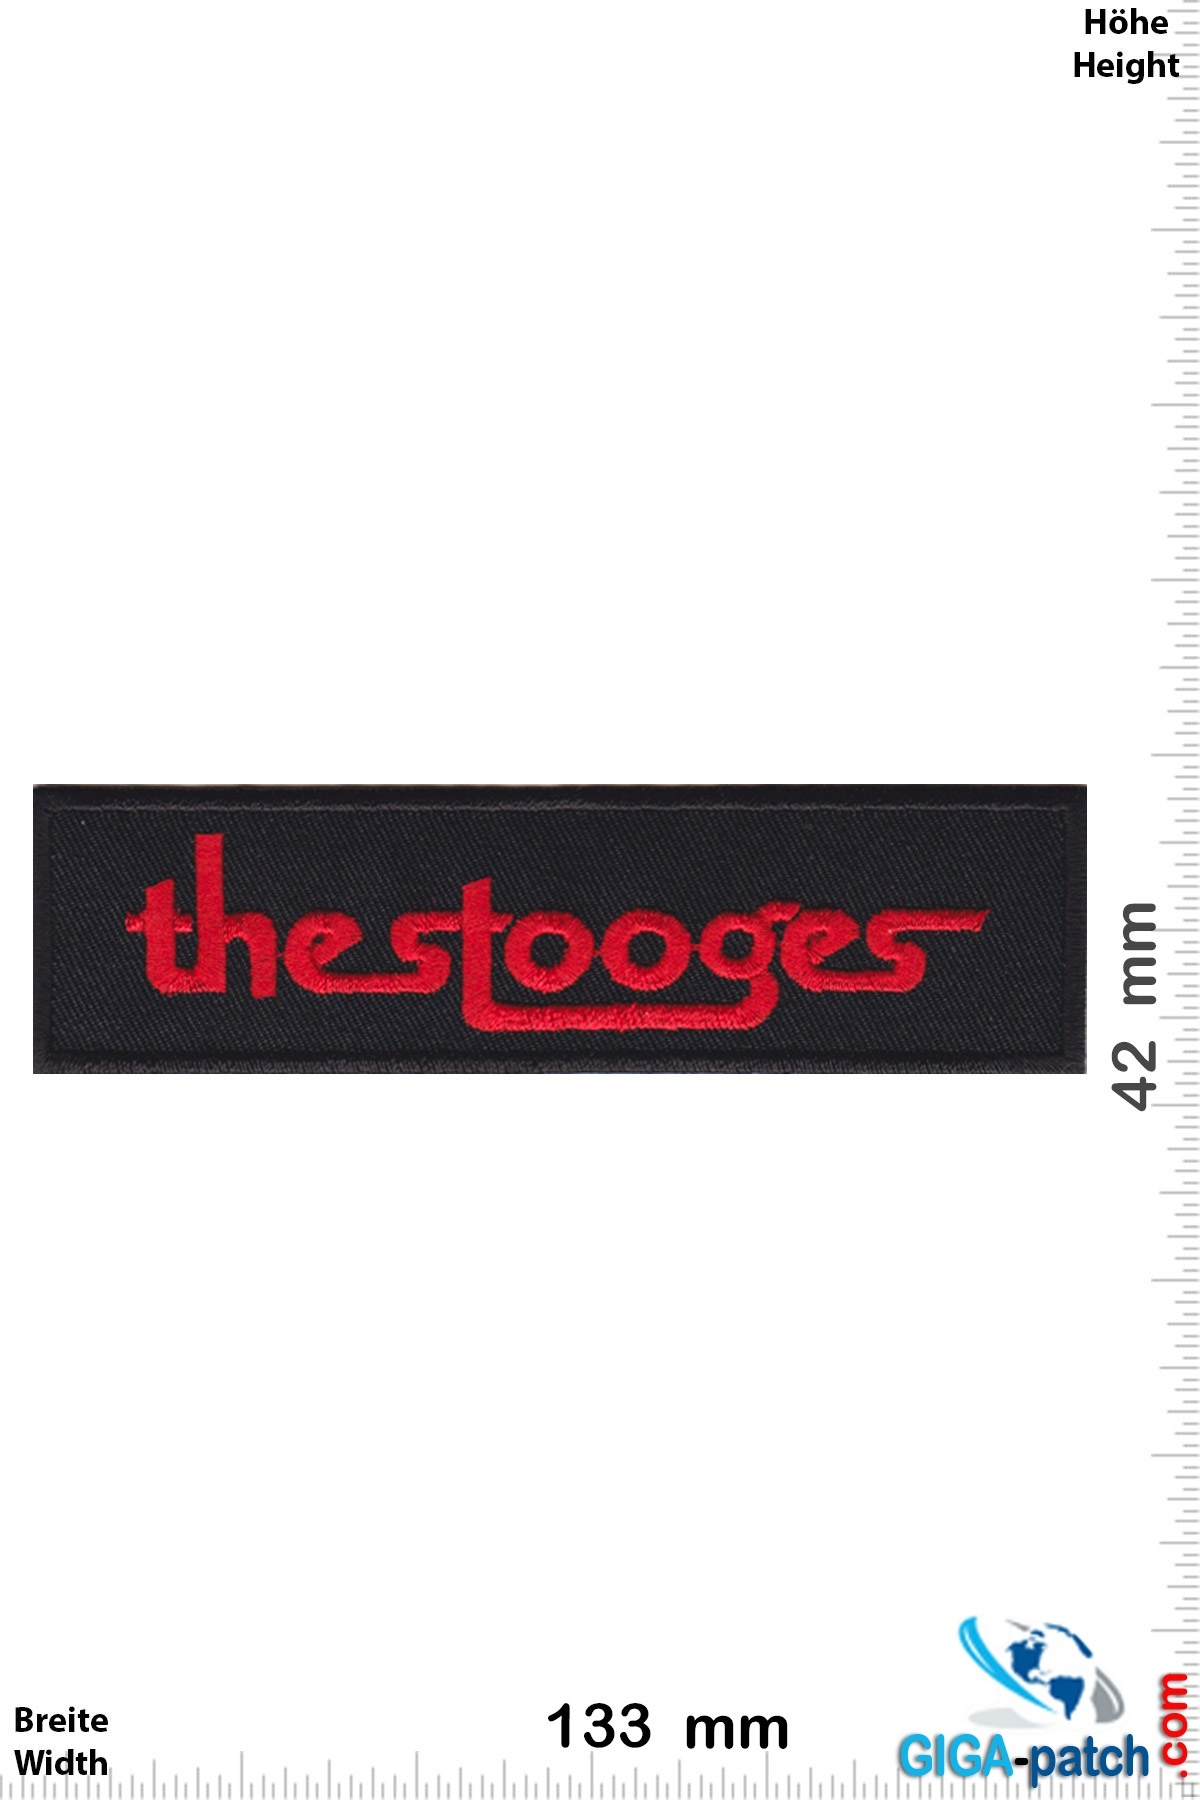 The Stooges - Rockband  Garage Rocks